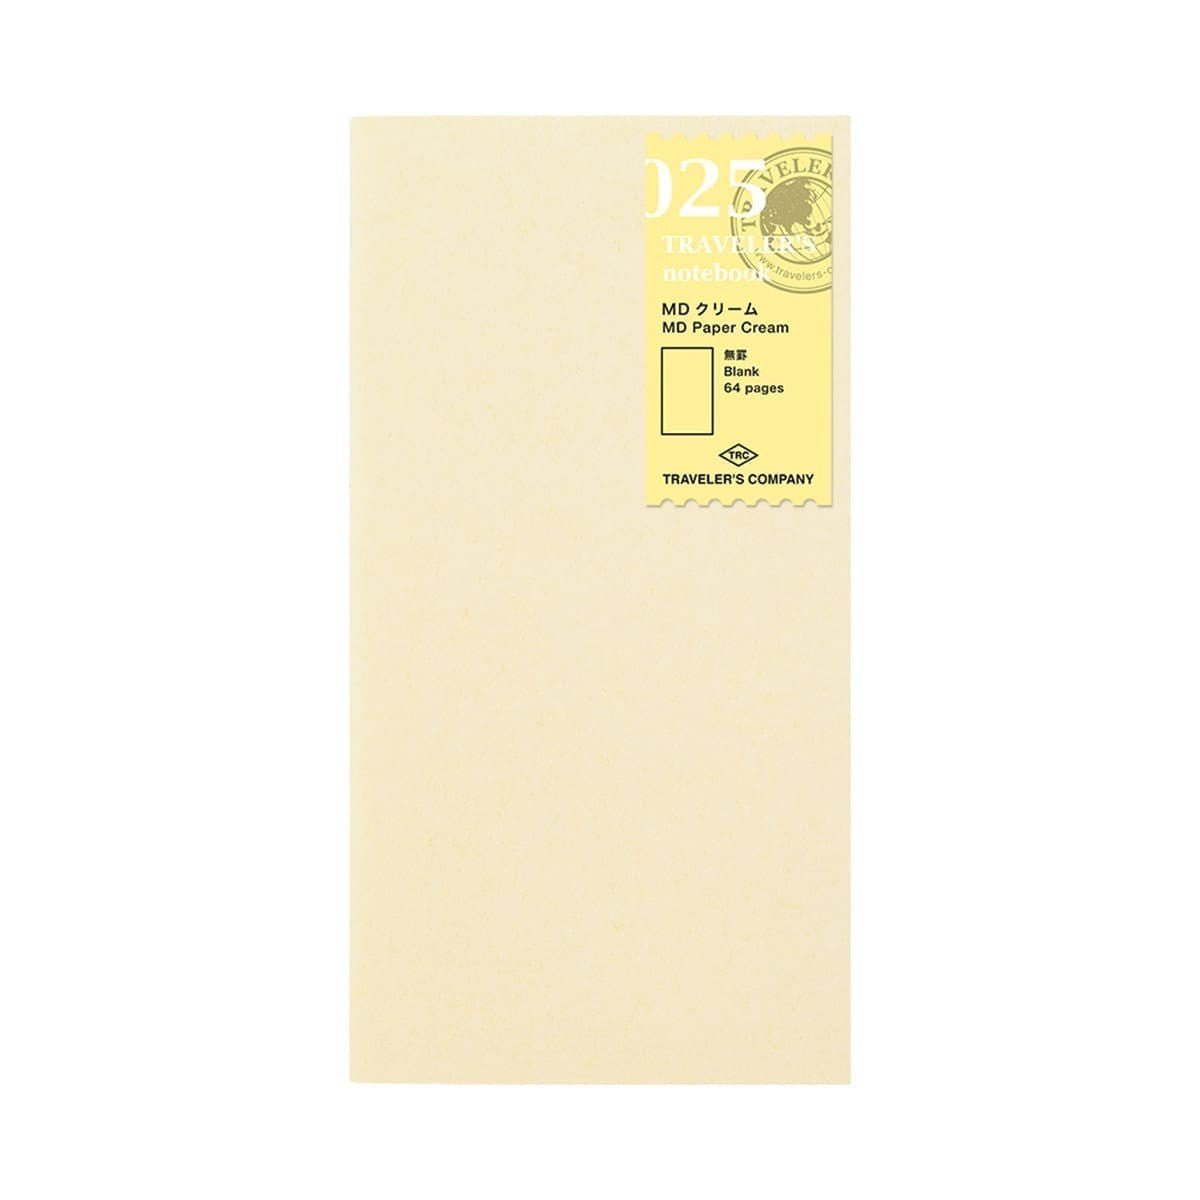 TN Regular Refill 025. MD Paper Cream - Traveler's Company - Tidformera